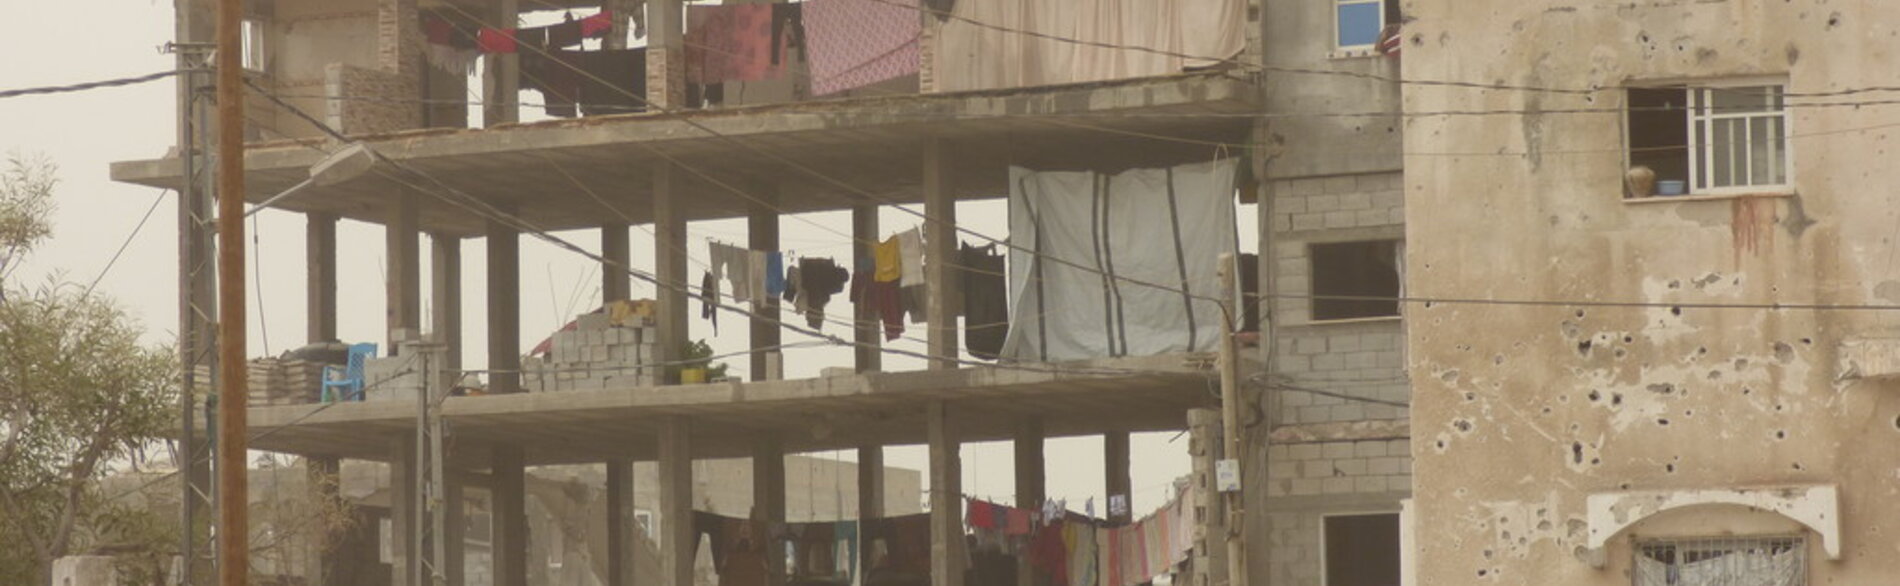 مبنى قيد البناء لإسكان النازحين ؛ بيت حانون ,صورة بواسطة مكتب تنسيق الشؤون الإنسانية، تشرين الأول/أكتوبر 2015